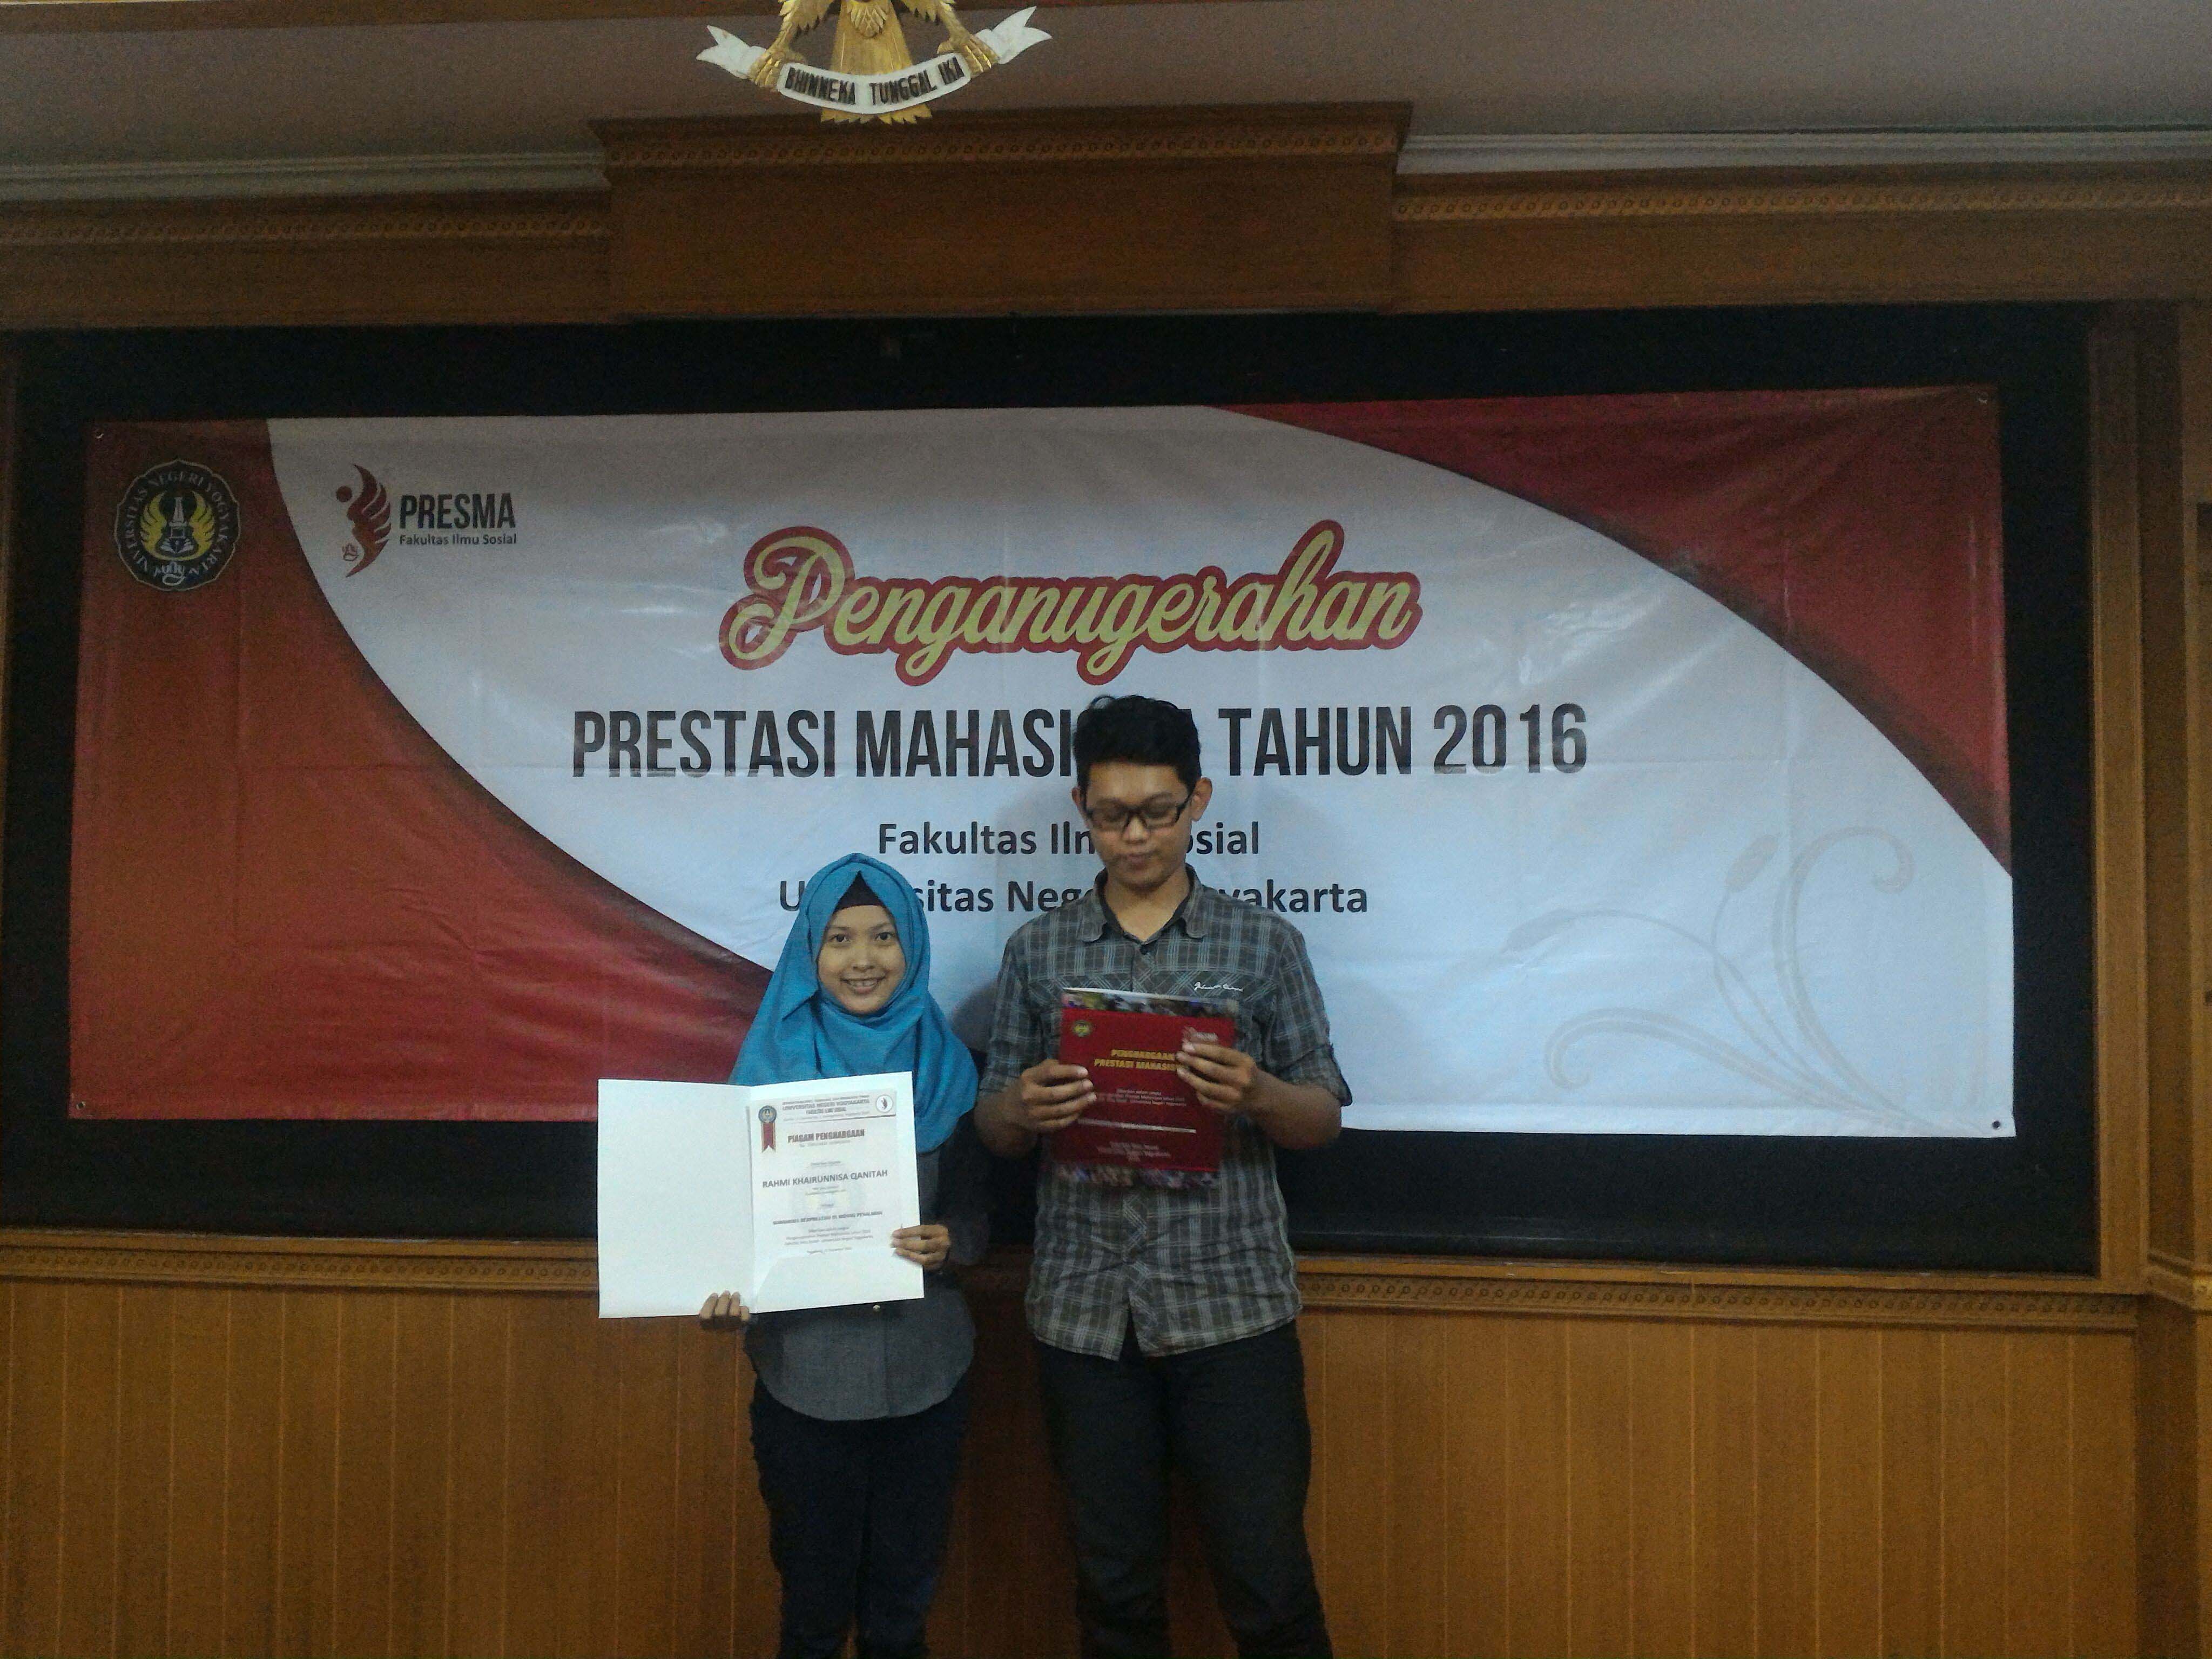 Foto Penganugerahan Prestasi Mahasiswa Fakultas Ilmu Sosial Universitas Negeri Yogyakarta 2016